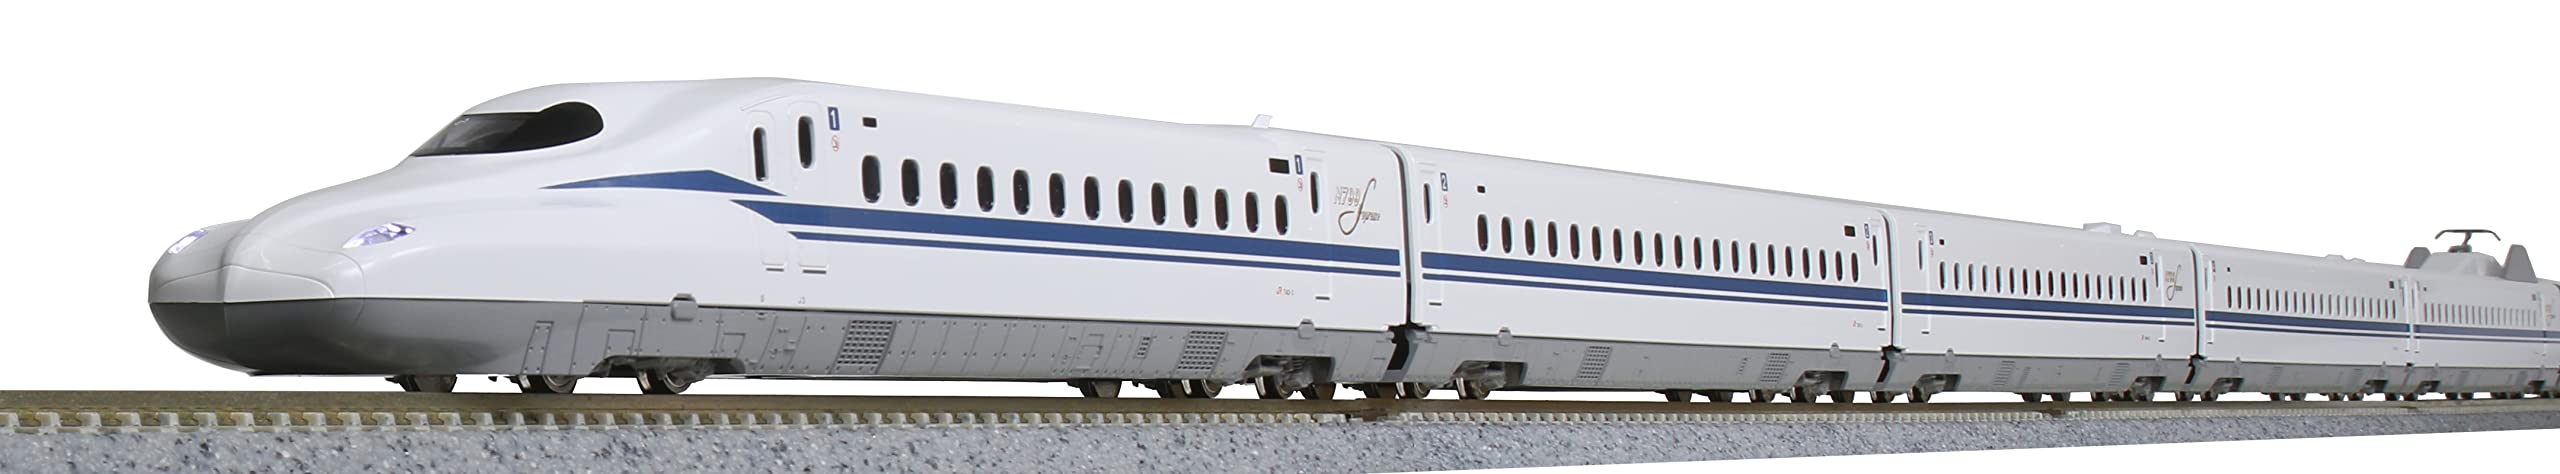 Kato N Gauge 10-007 N700S Shinkansen Nozomi Train Set White